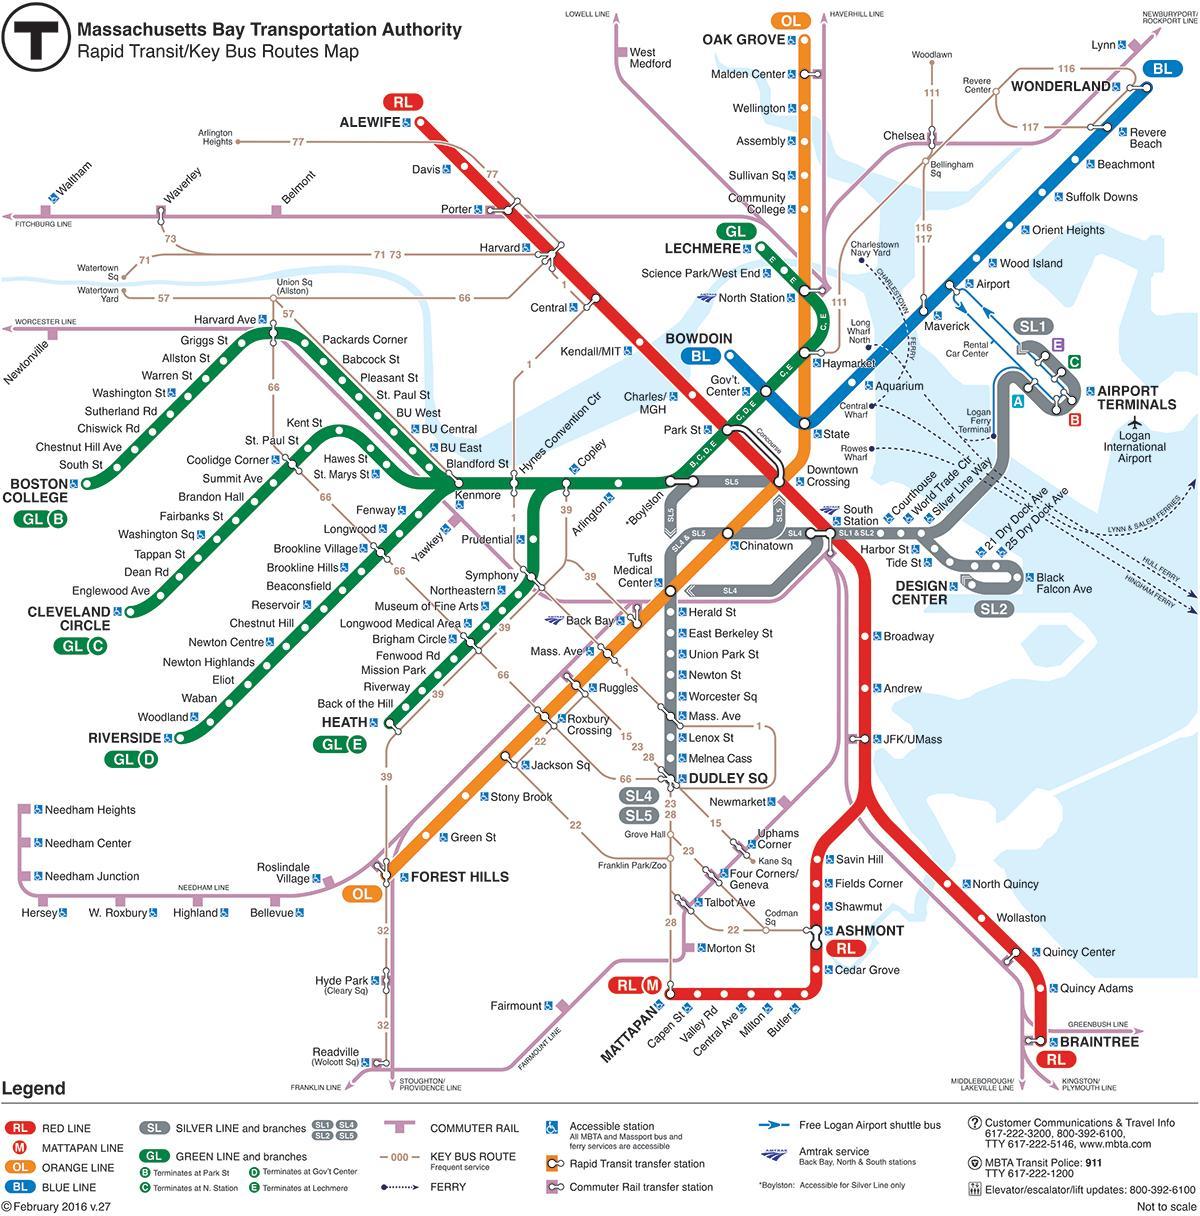 MBTA mapě červená čára